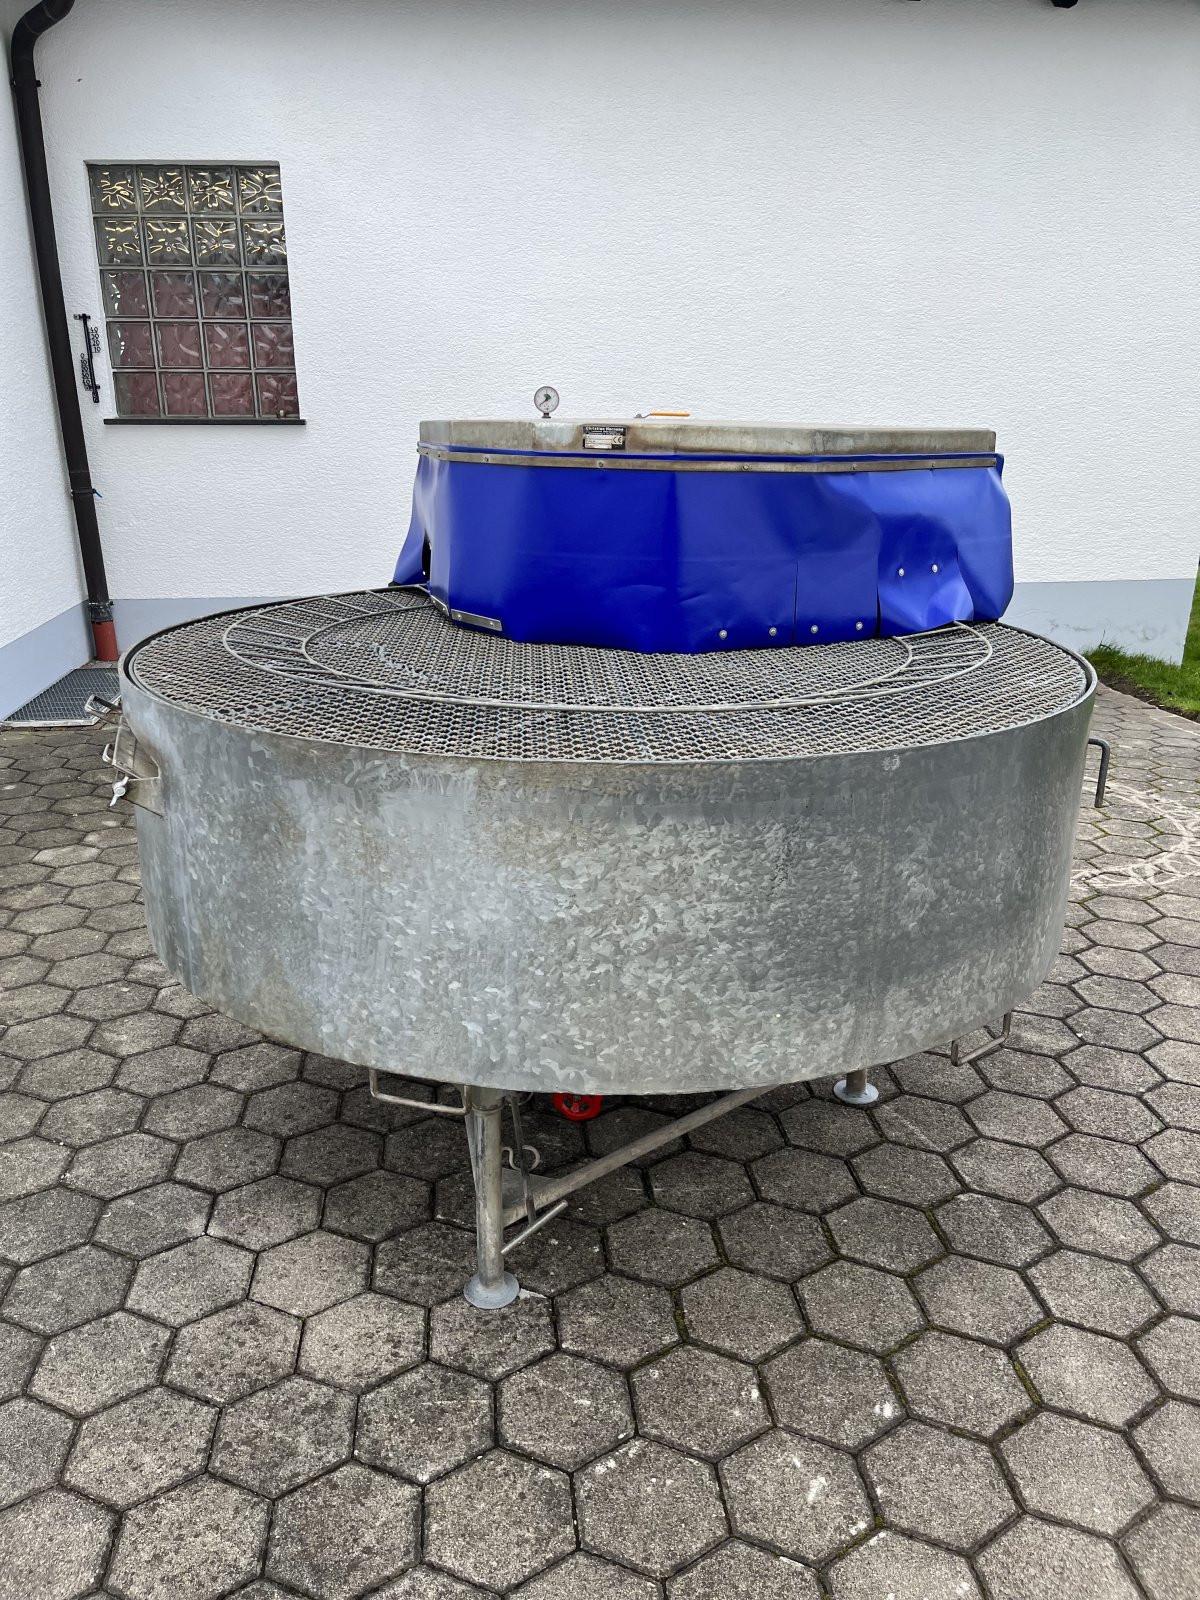 Waschmaschine типа Hornung Gemüsewascher, Gebrauchtmaschine в Friedberg (Фотография 1)